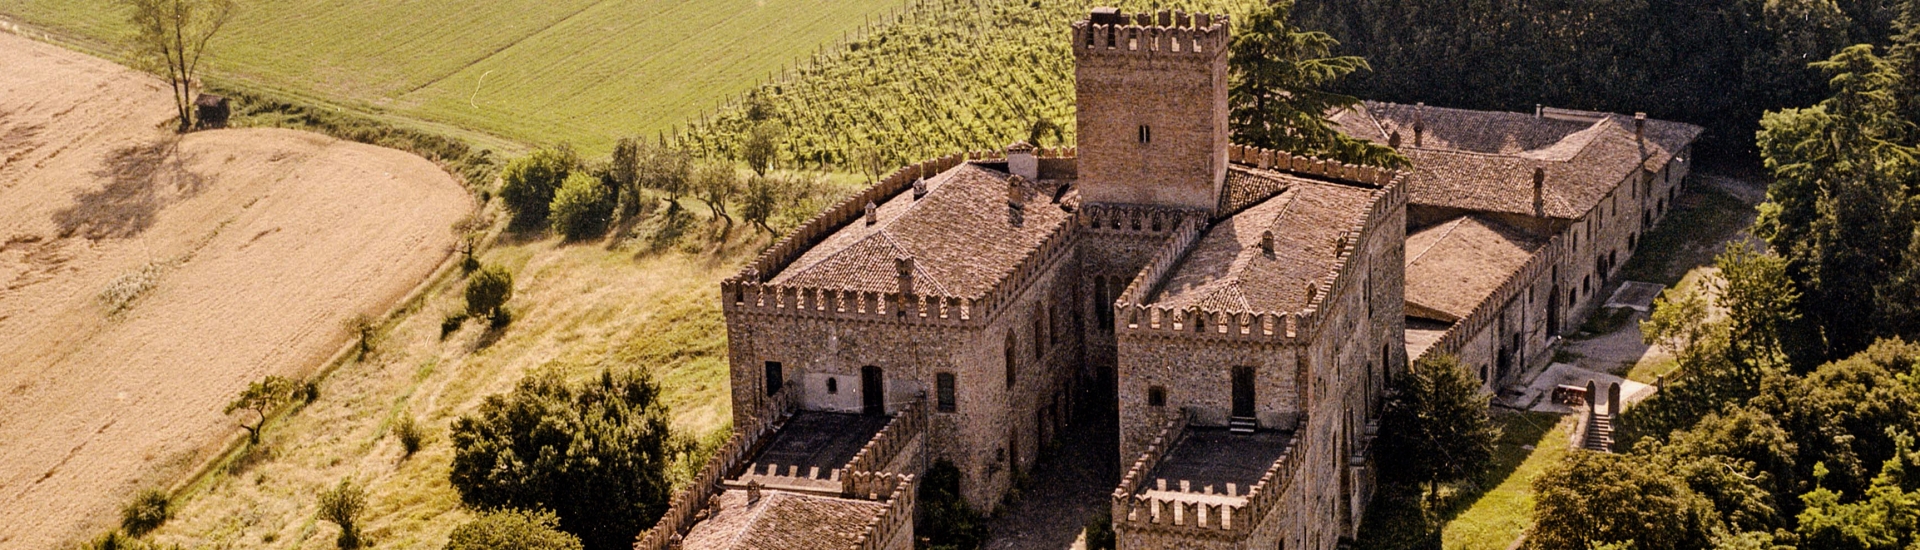 Castello di Tabiano - Aerial View, Castello di Tabiano photo credits: |Castello di Tabiano| - Castello di Tabiano